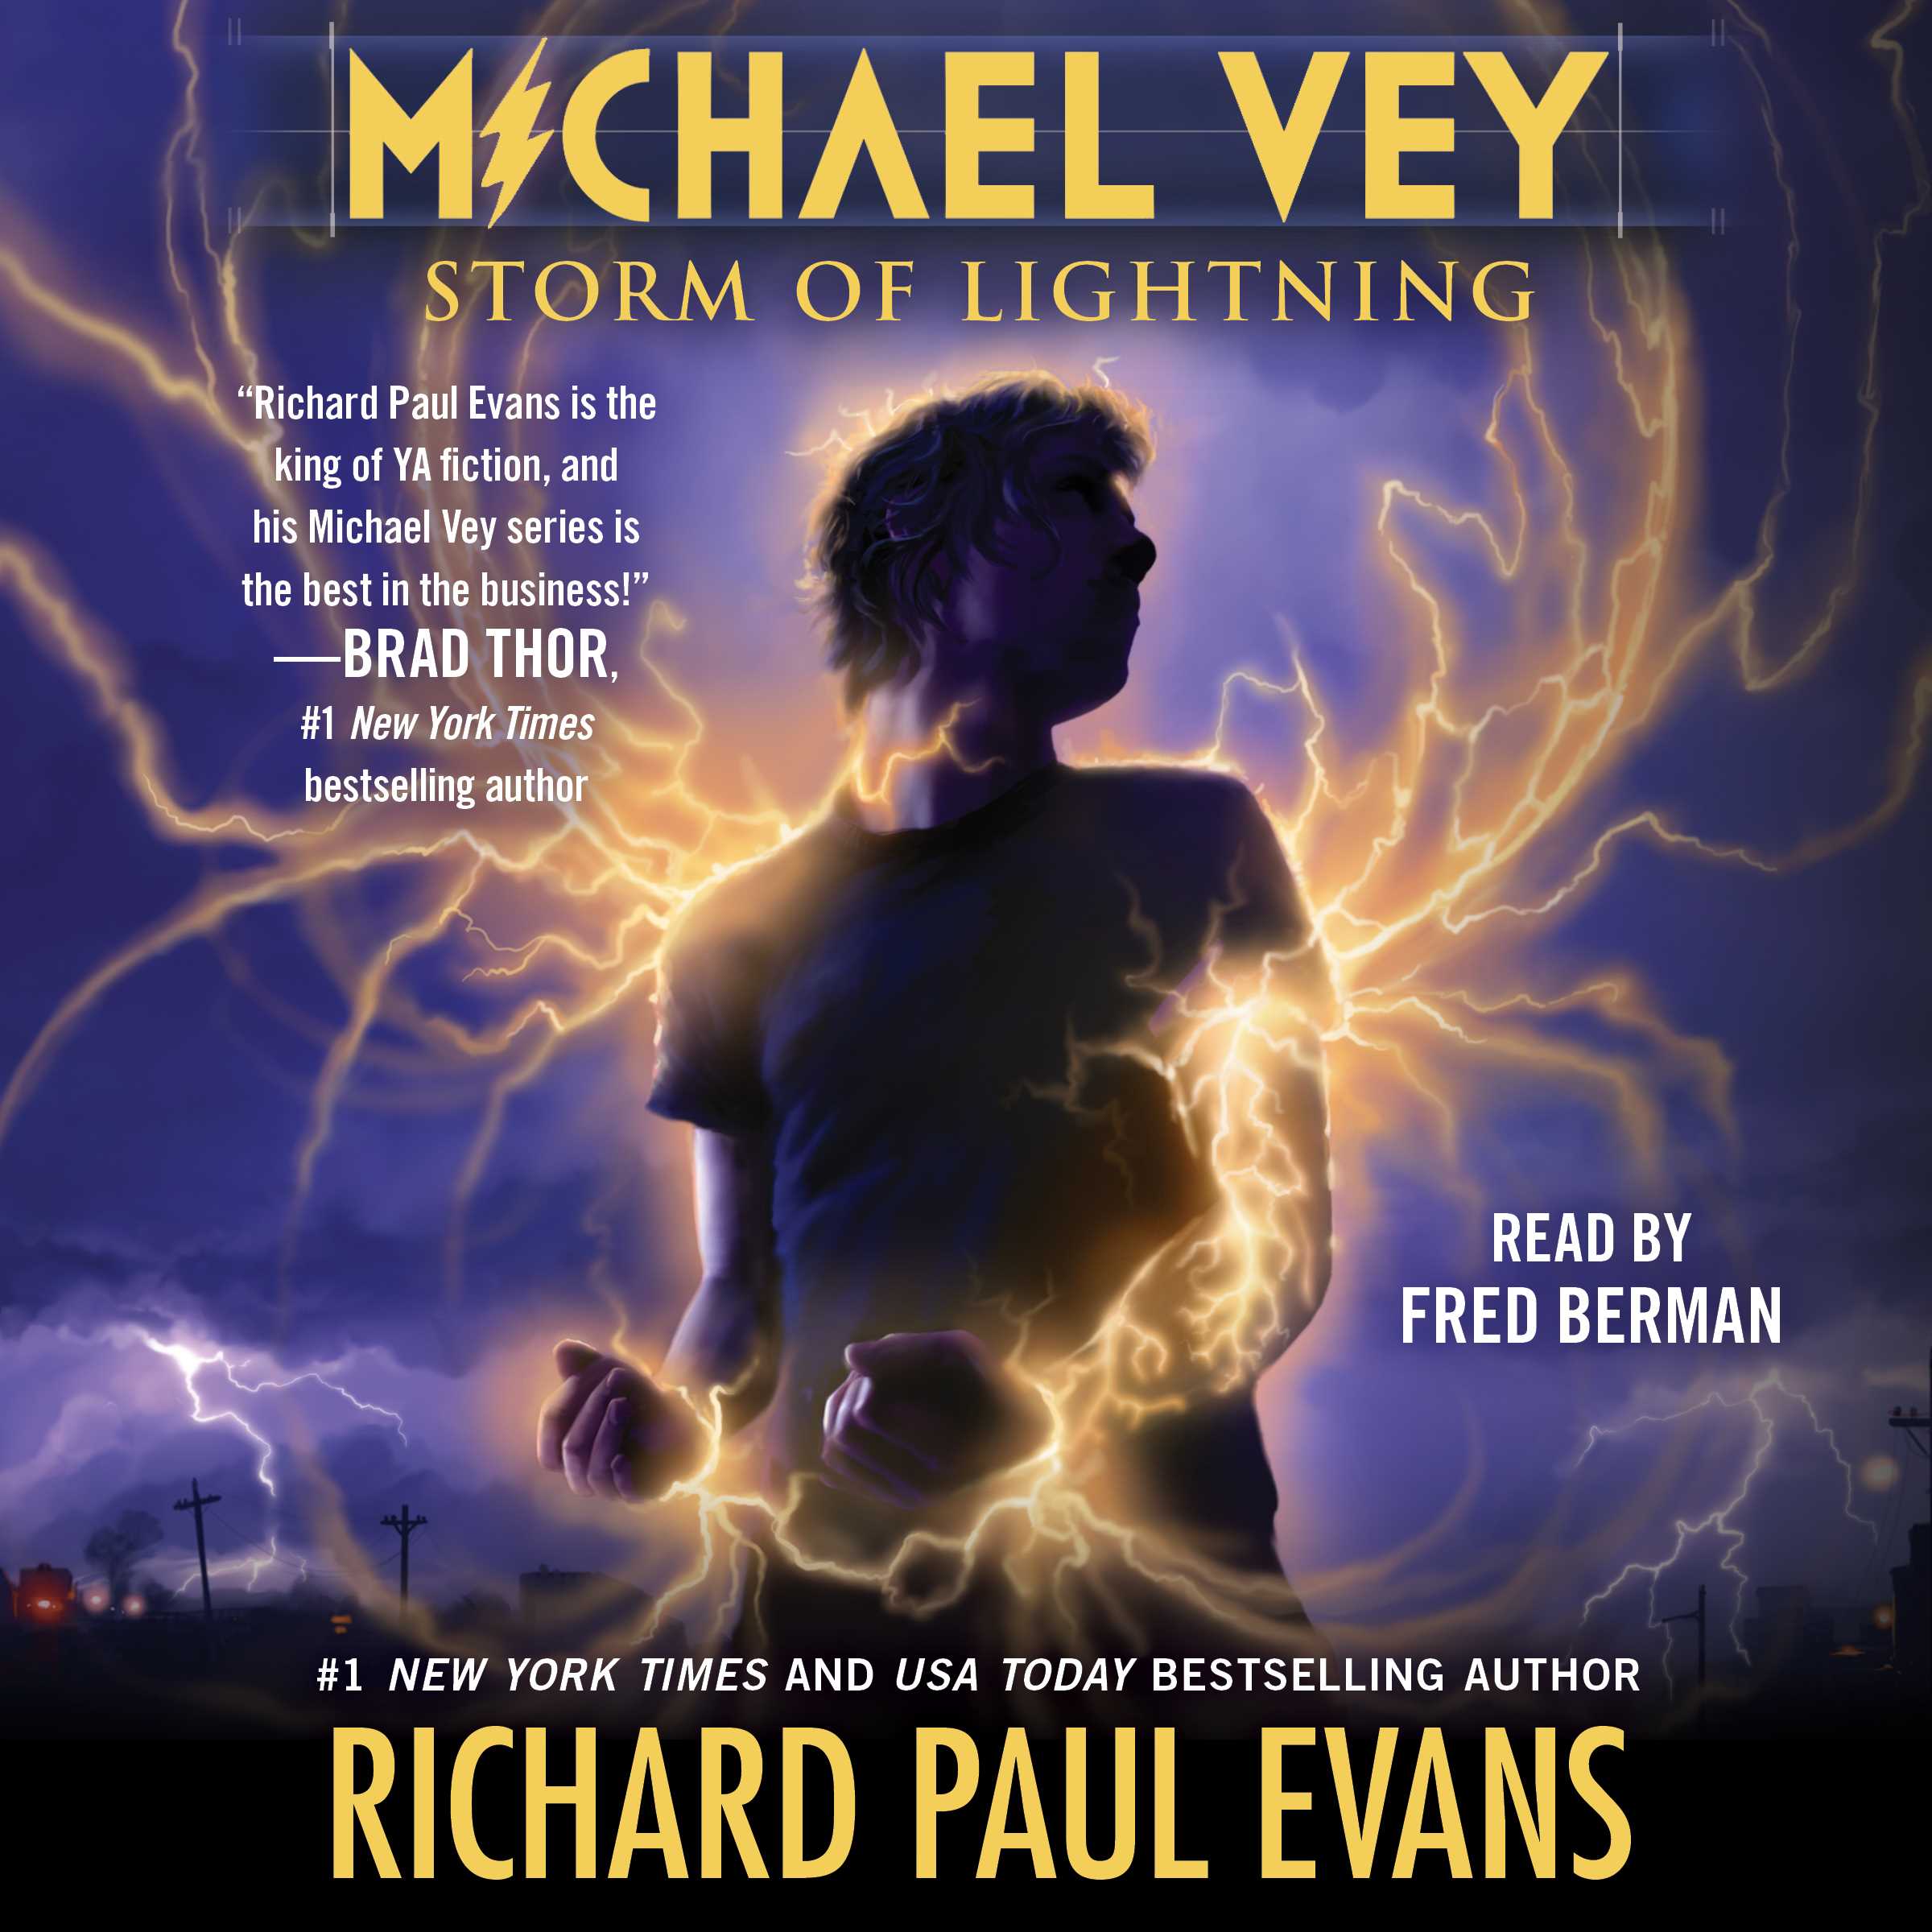 Michael Vey 5 Audiobook by Richard Paul Evans, Fred Berman